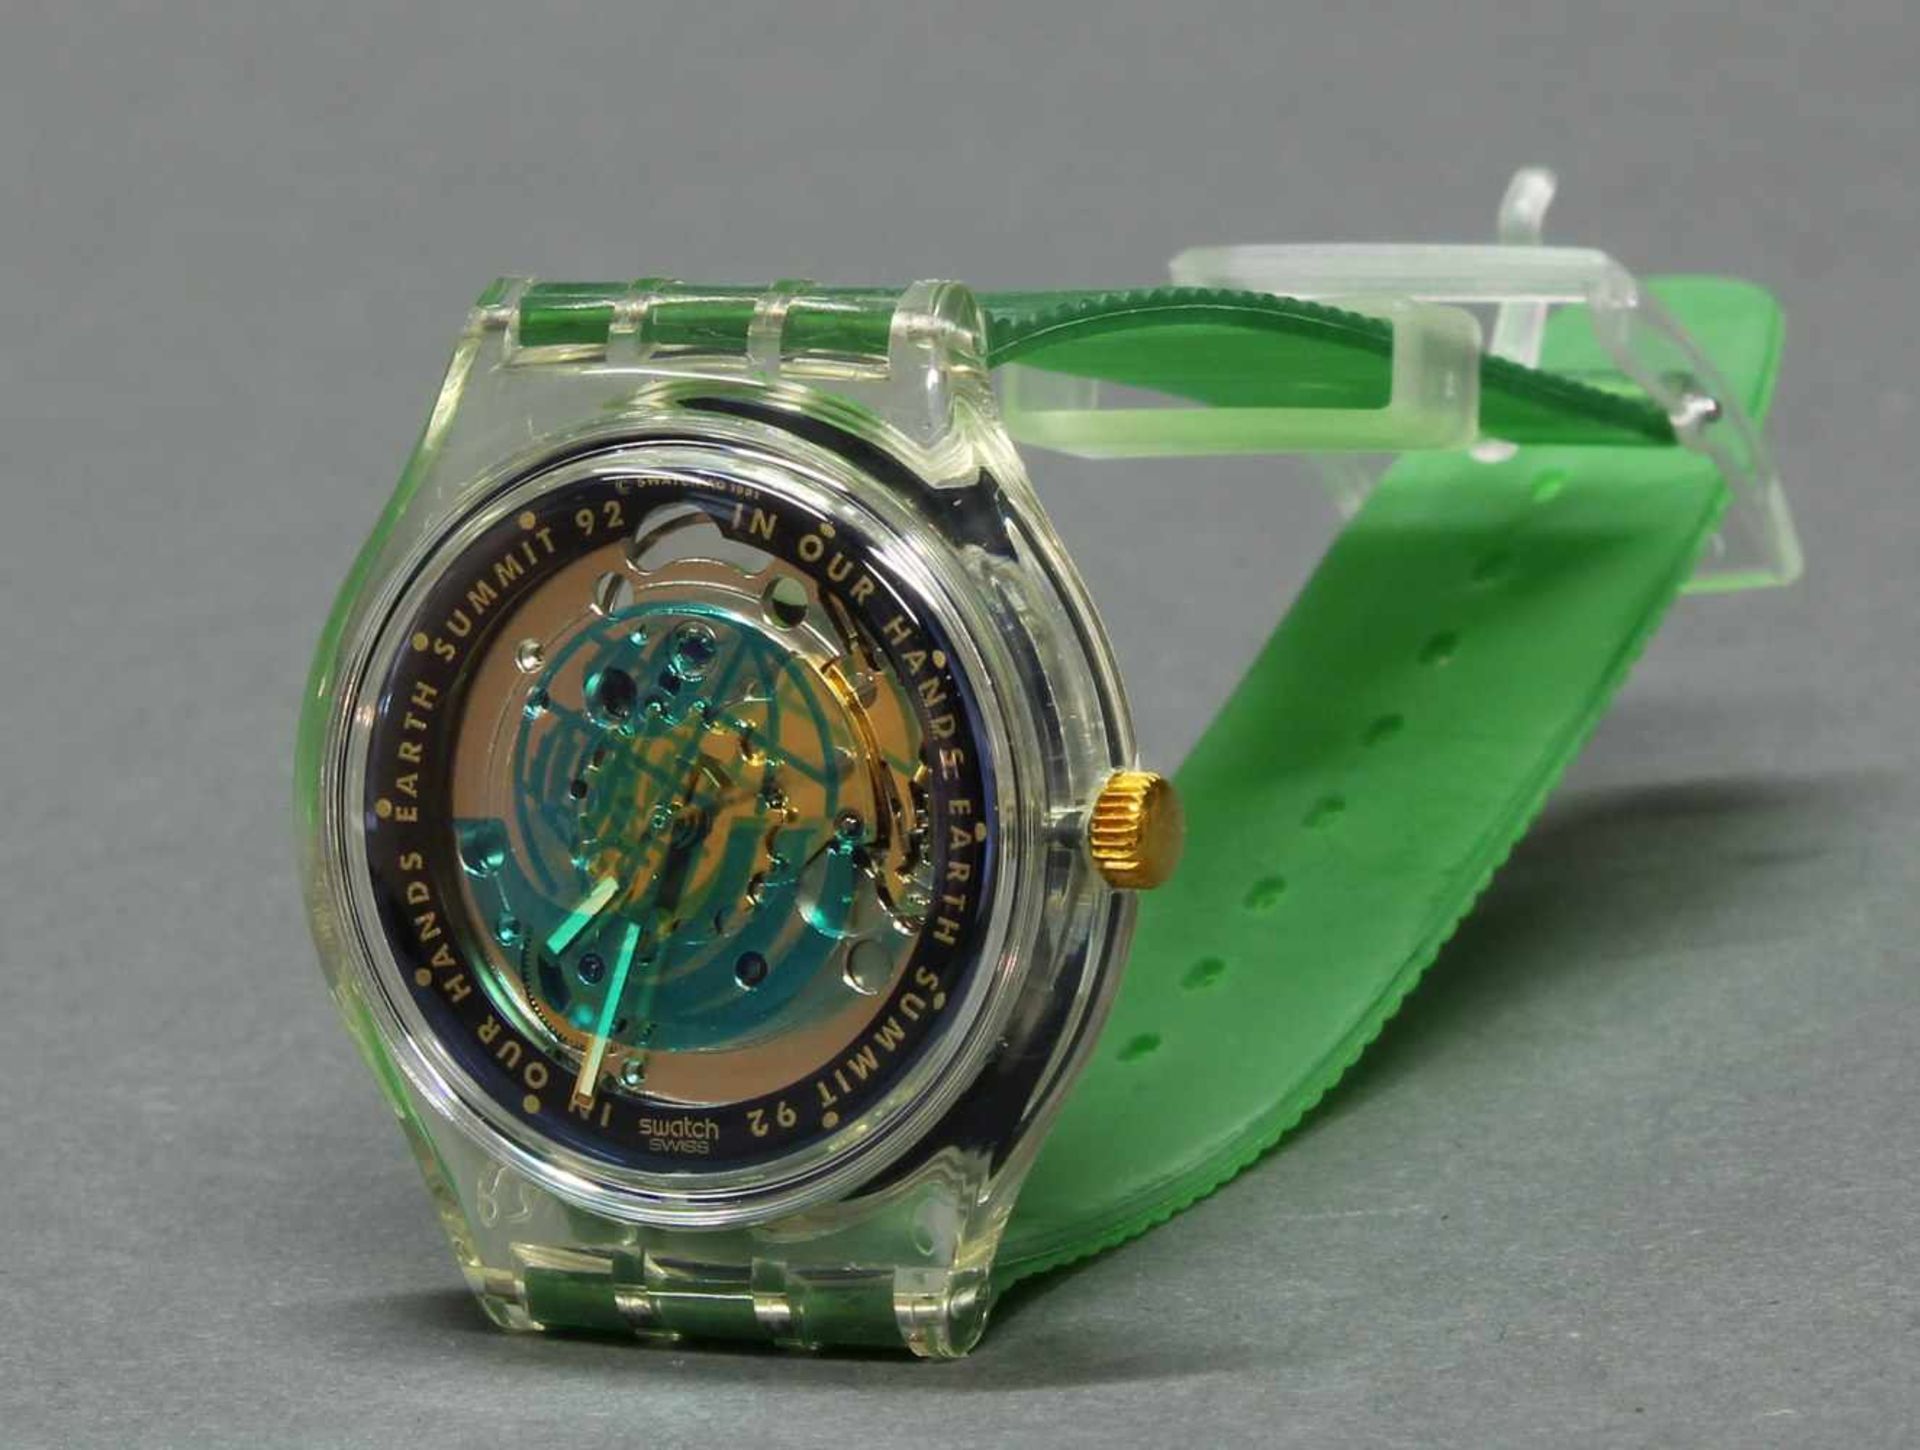 3 Art-Armbanduhren, Quarz, limitierte Auflagen, Kunststoff/Metall, Werke nicht geprüft, 3 - Image 4 of 5